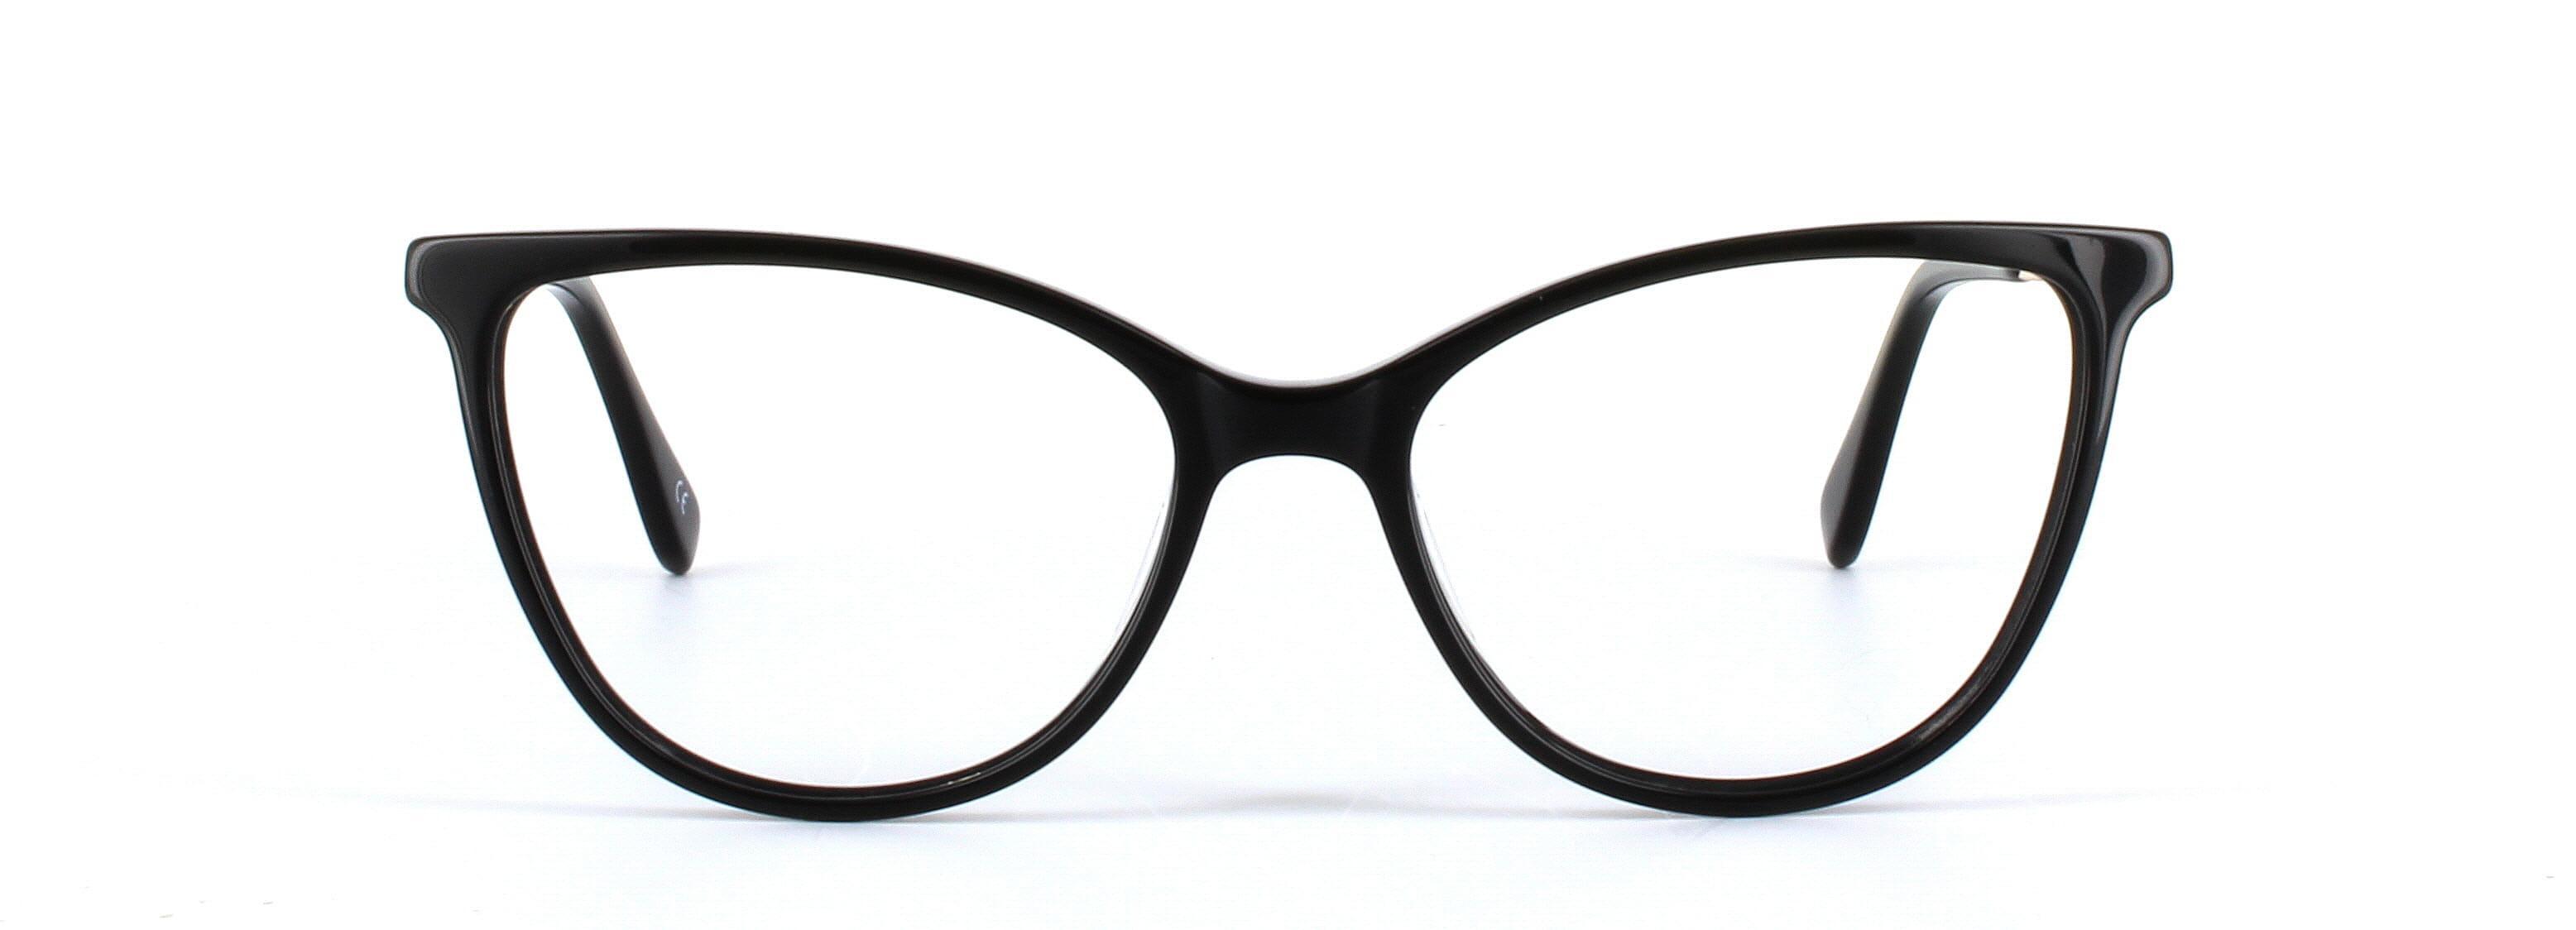 Callie Black Full Rim Cat Eye Acetate Glasses - Image View 5